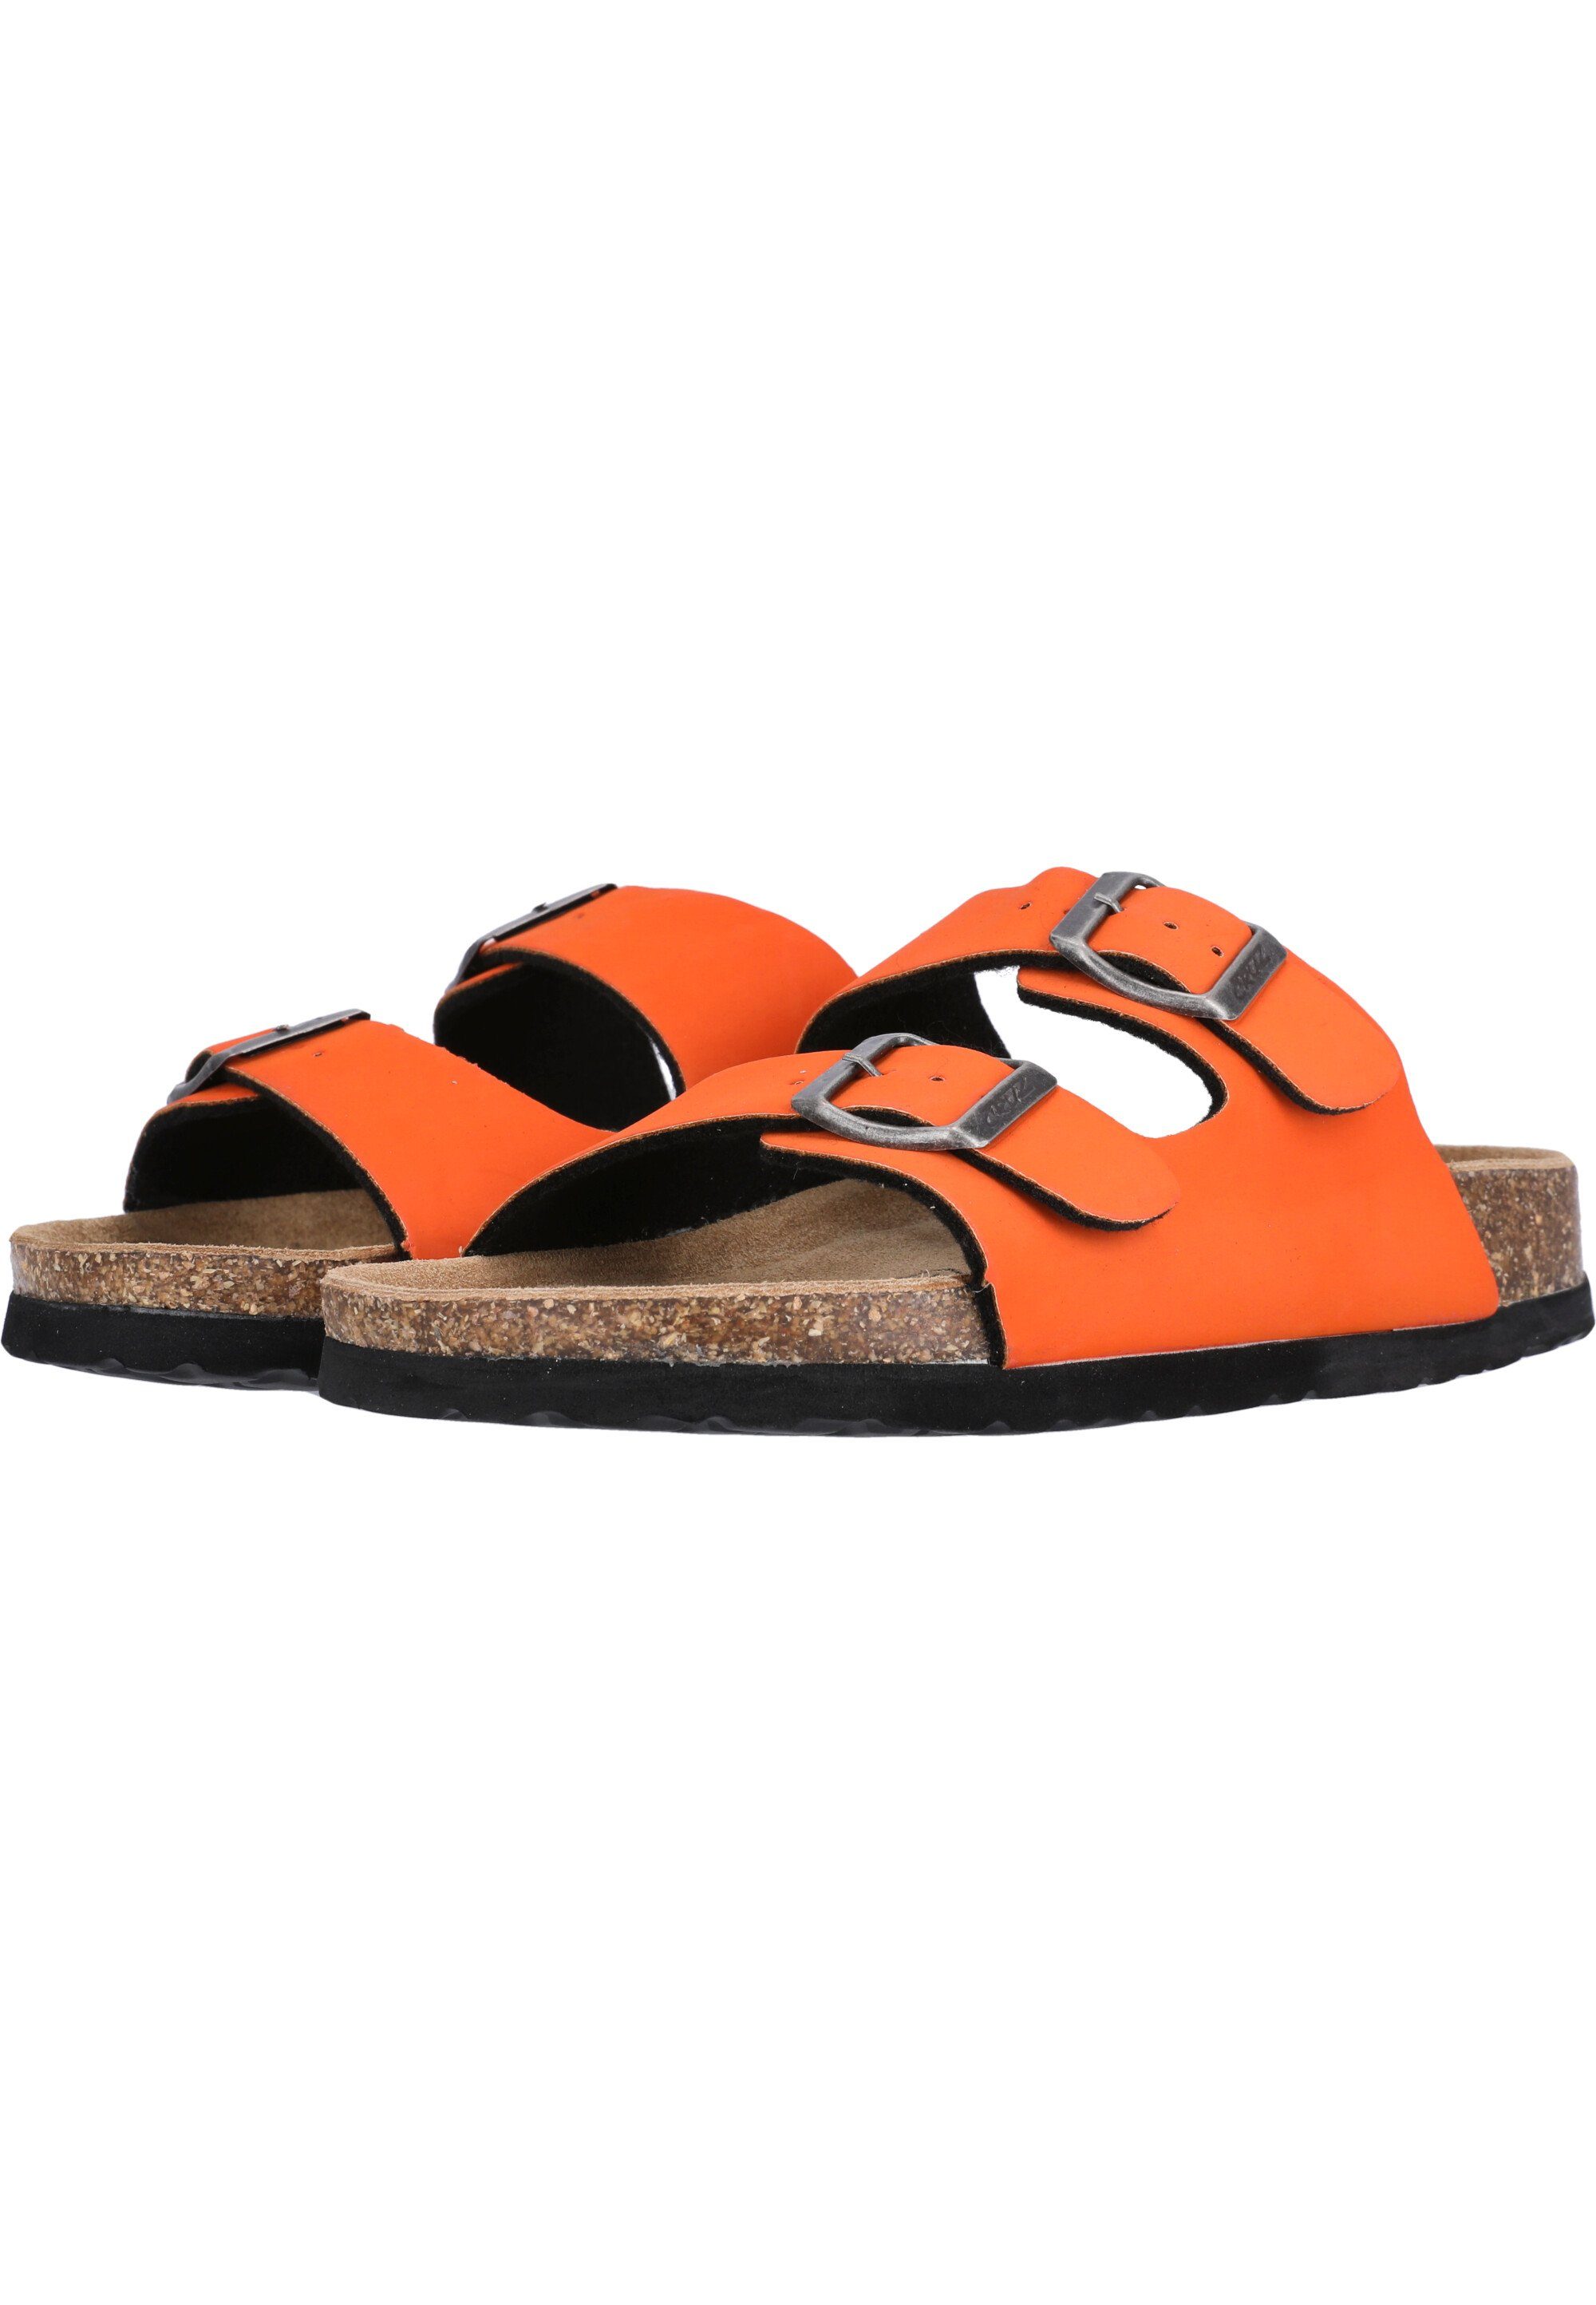 CRUZ Hardingburg Sandale mit ergonomischem Fußbett orange-schwarz